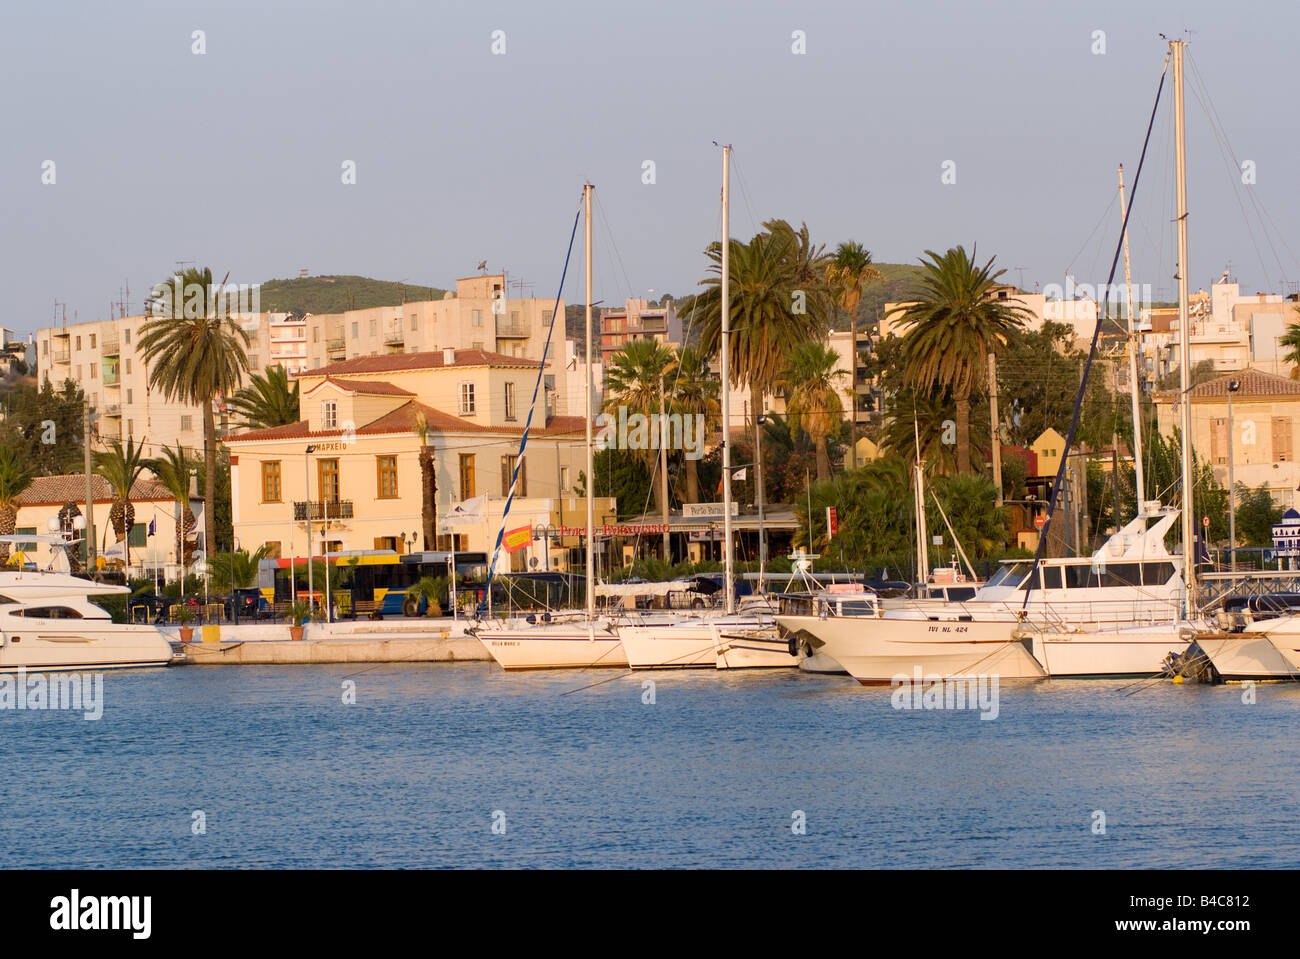 Luxus-Yachten und Kreuzer im frühen Morgen Sonnenschein in Lavrion Stadt Hafen Ägäis Festland Griechenland Stockfoto